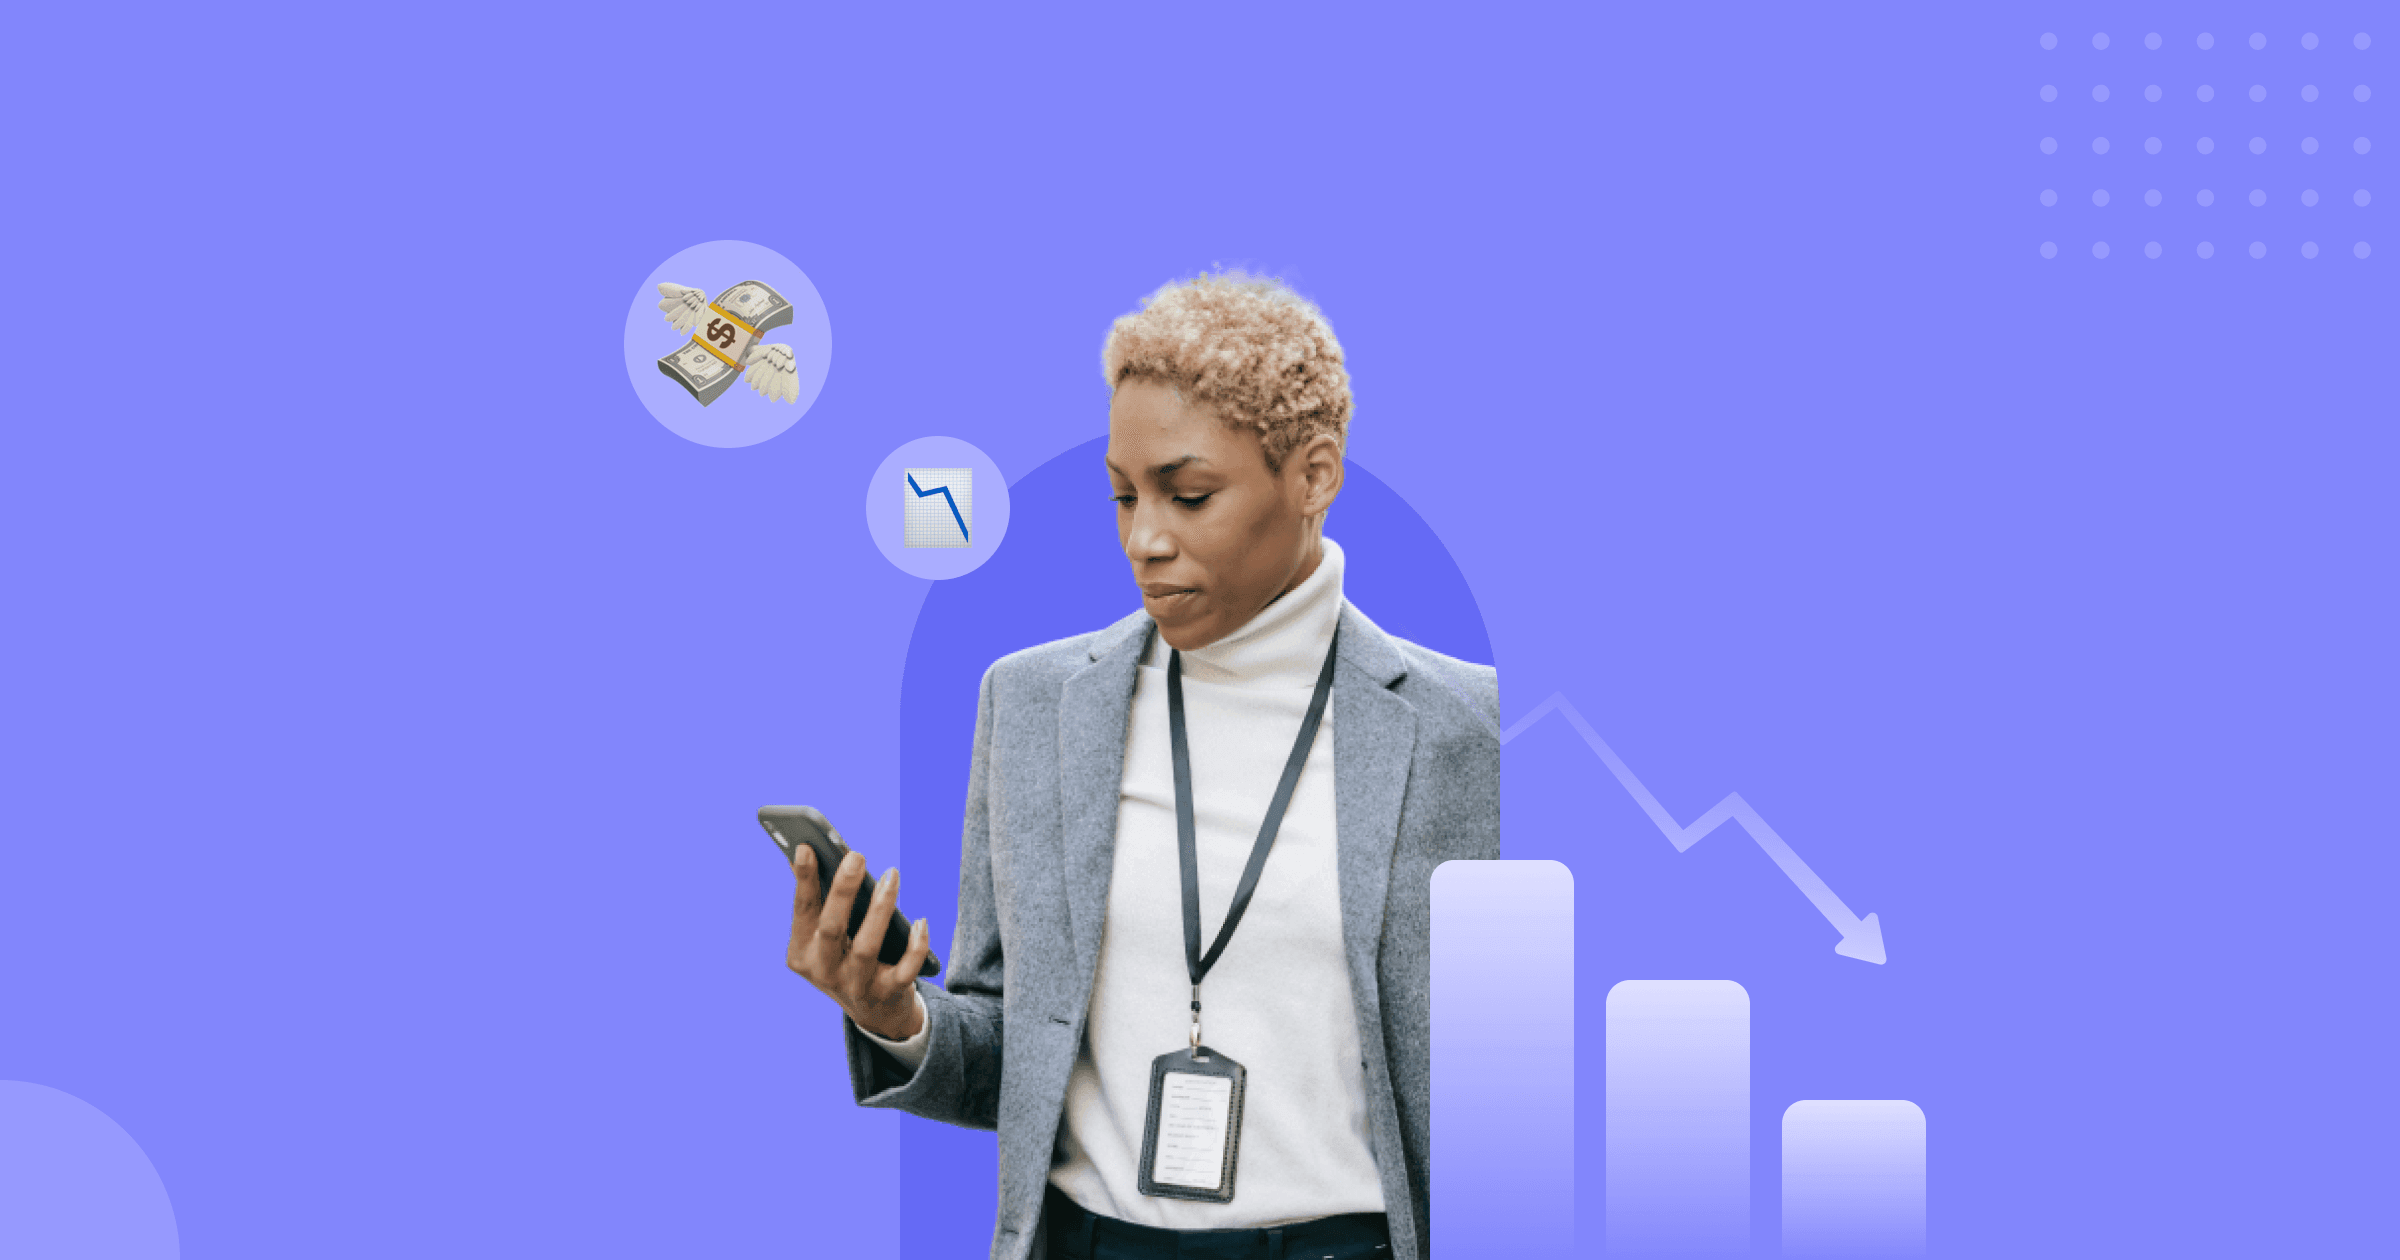 Uma imagem com fundo roxo contendo uma mulher segurando um celular e cercada por um emoji de dinheiro e um de gráfico de performance.